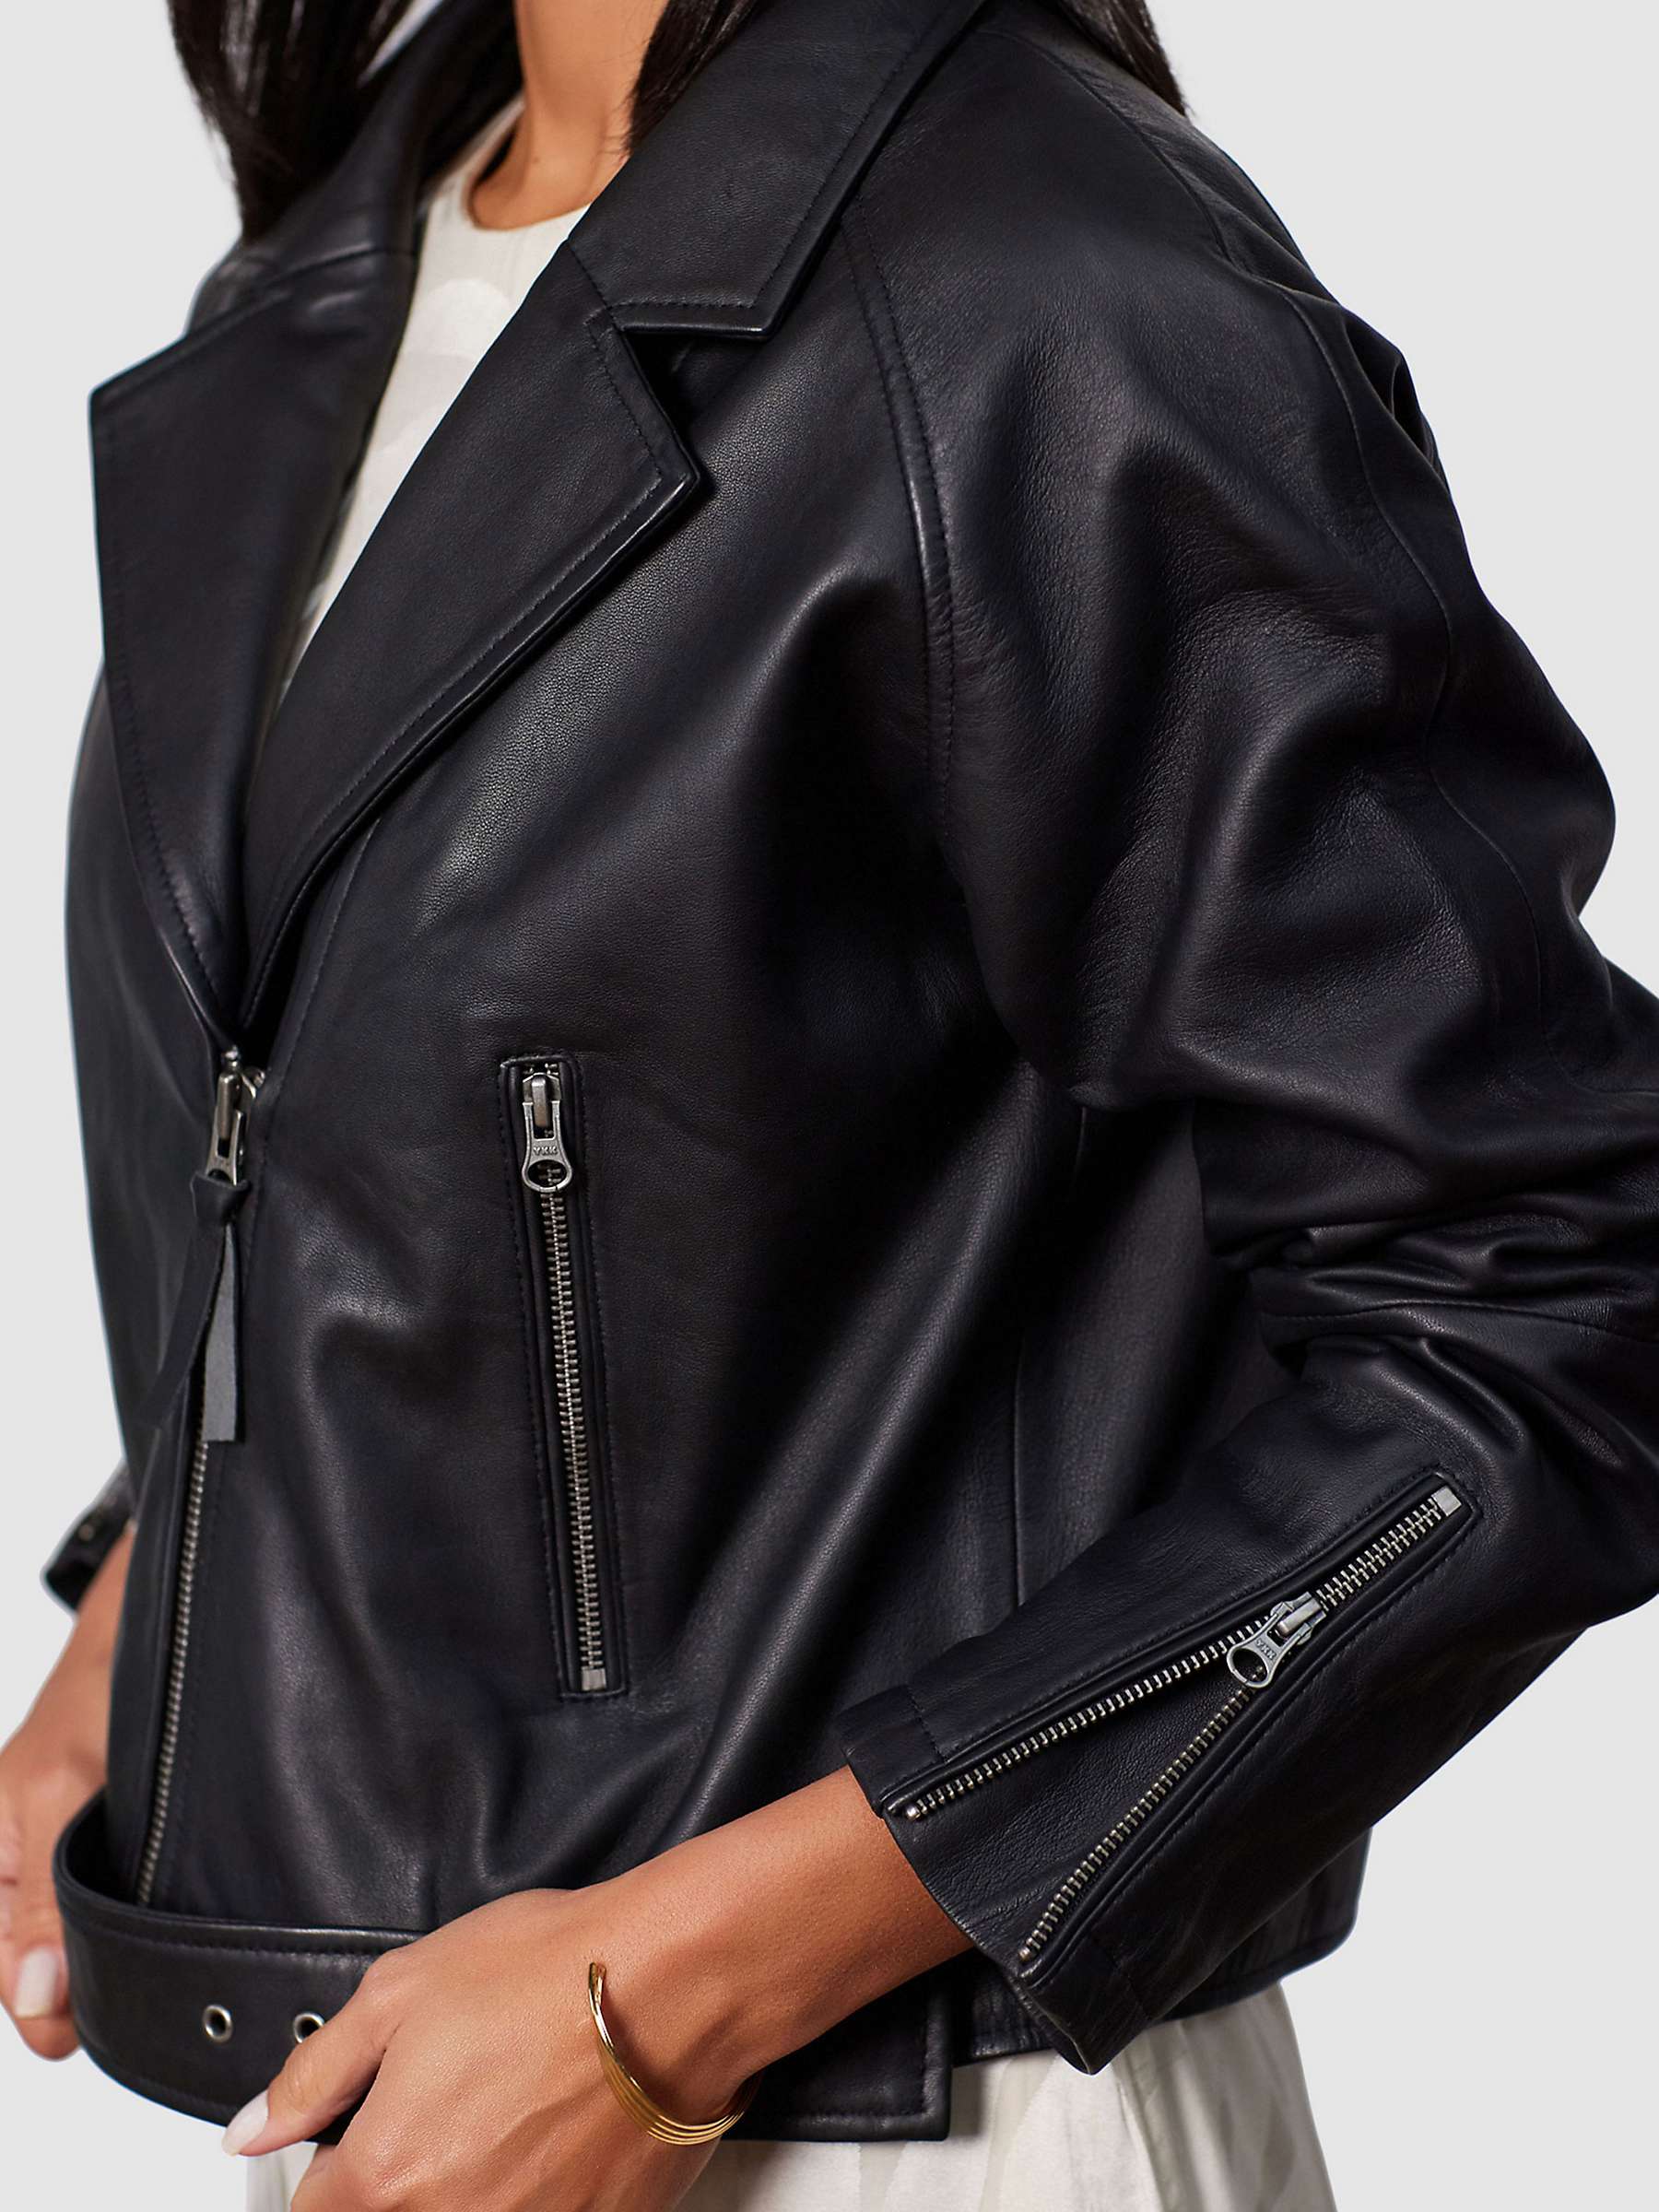 Buy Closet London Leather Biker Jacket,Black Online at johnlewis.com